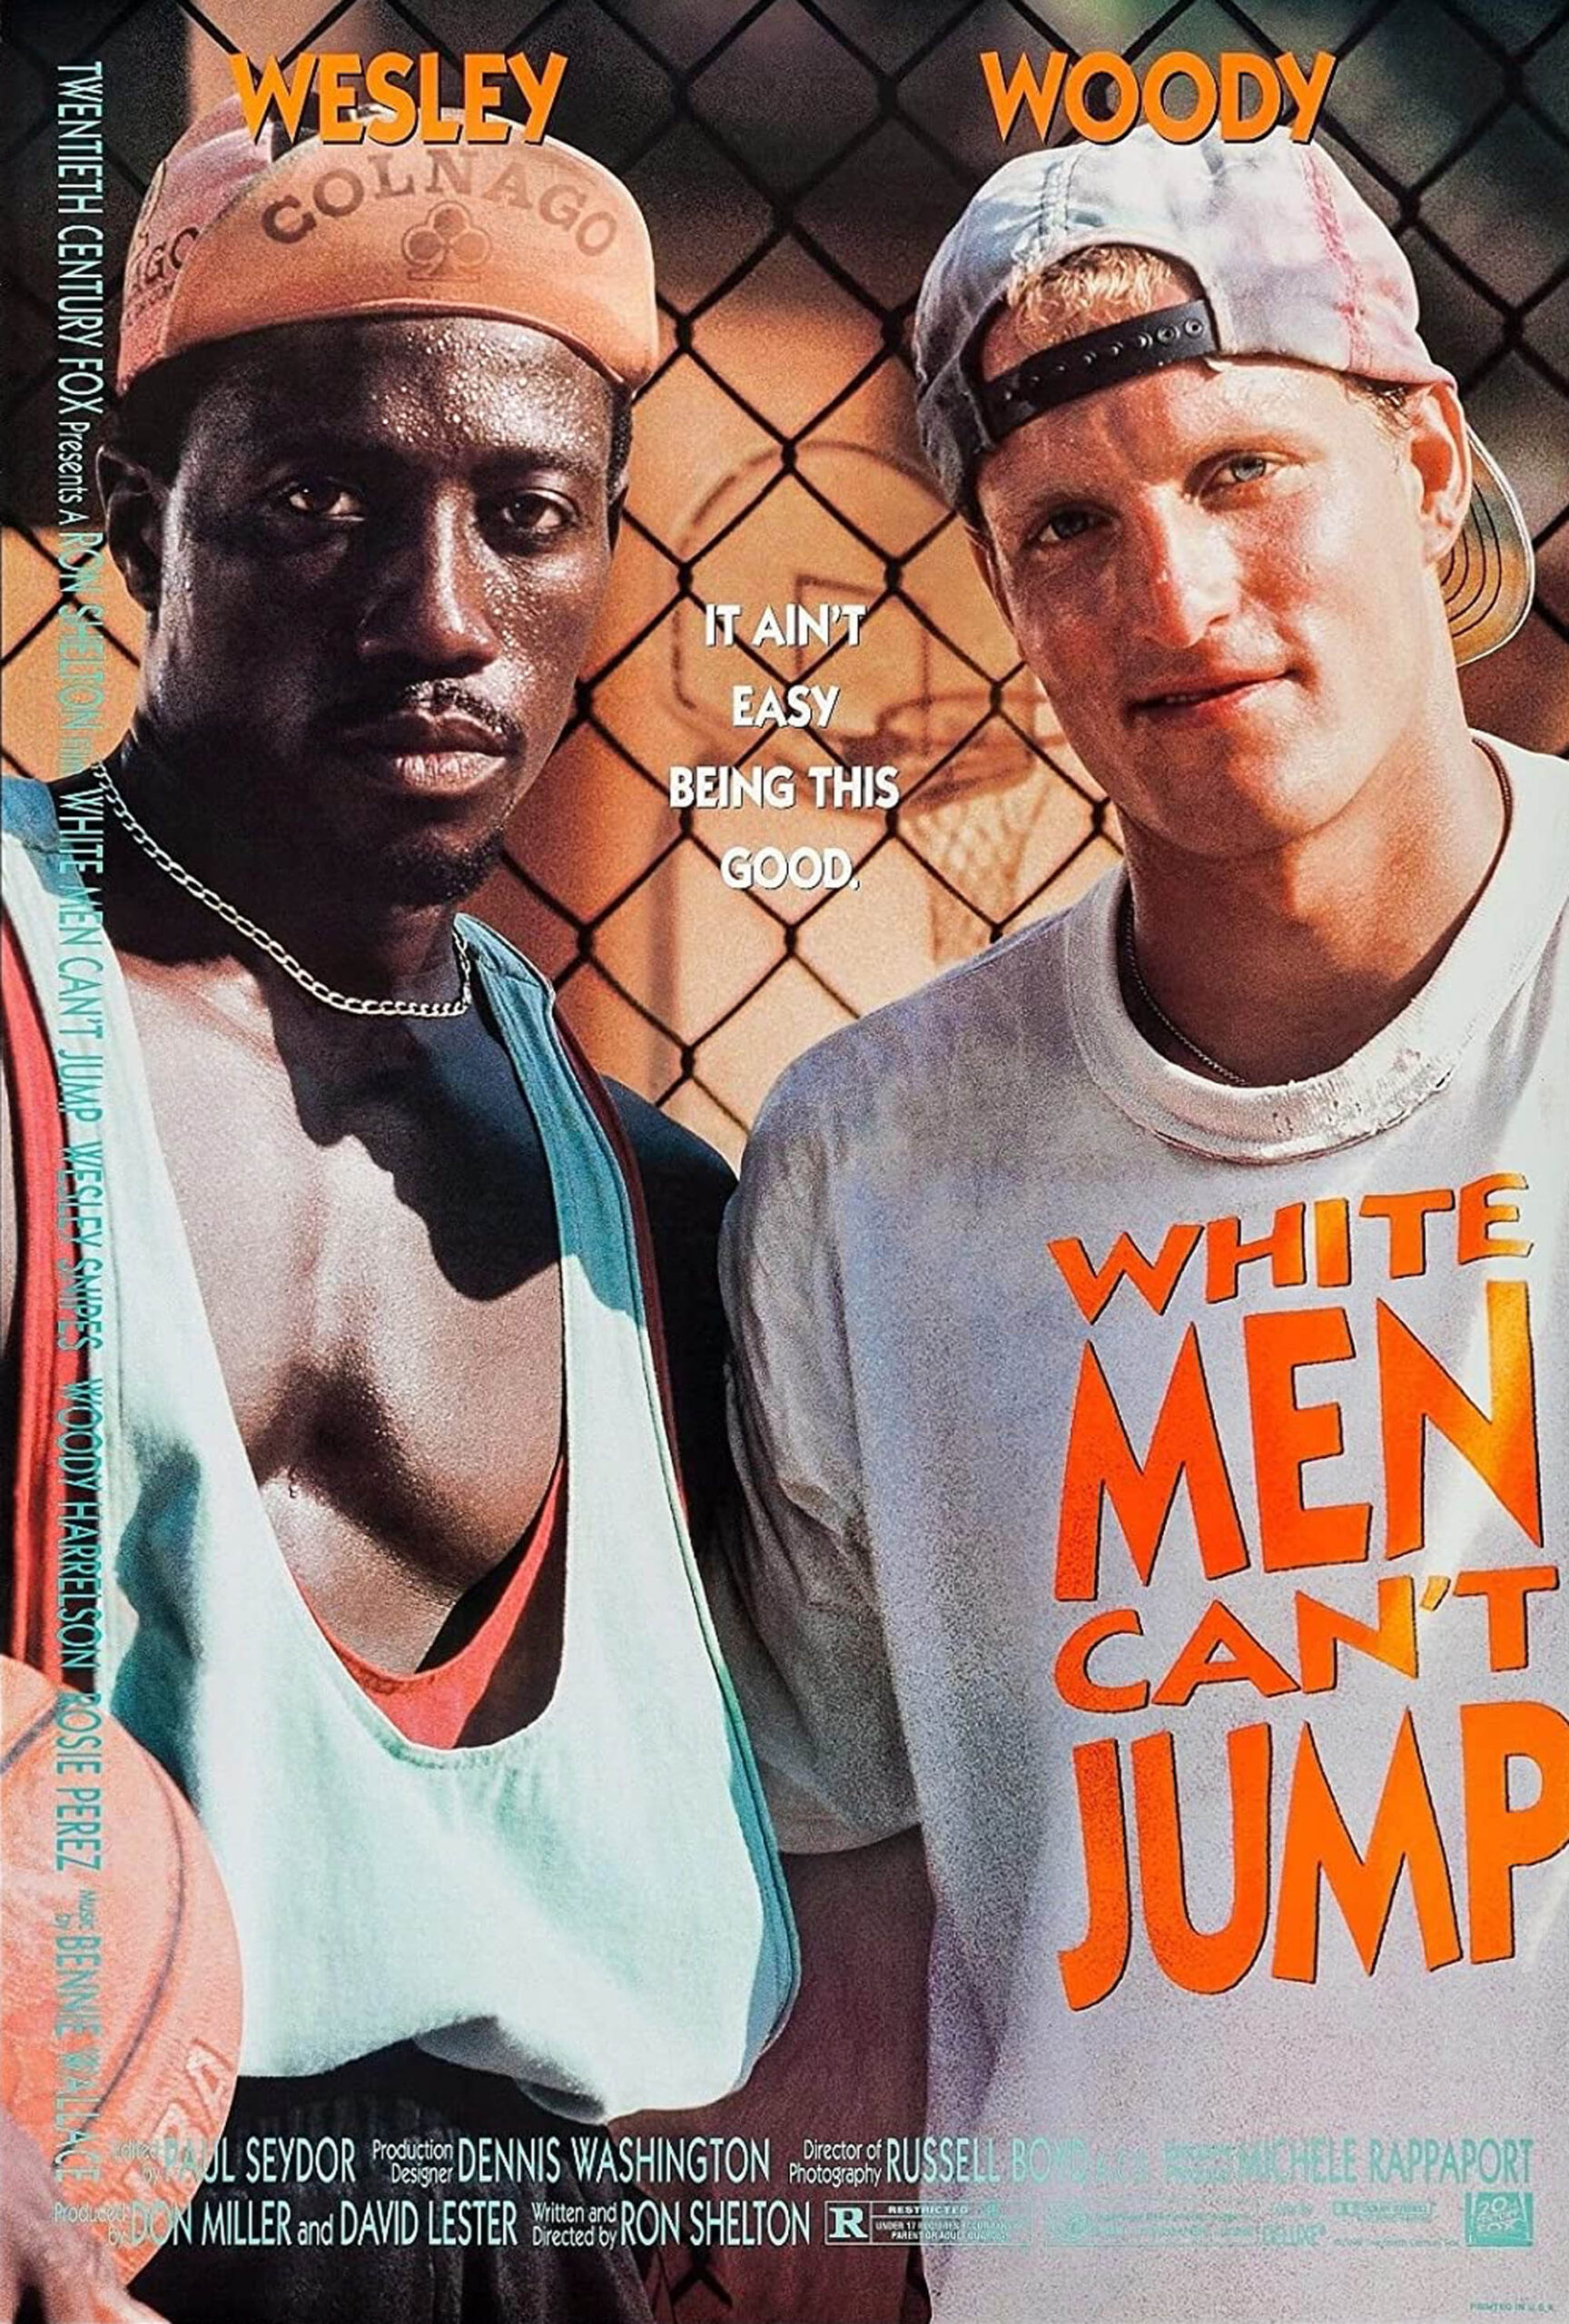 White Men Can't Jump 1992: Wesley Snipes som Syd Deane, Woody Harrelson som Billy Hoyle. Bør Lil Nas X spille førstnevnte? (20th Century Fox)